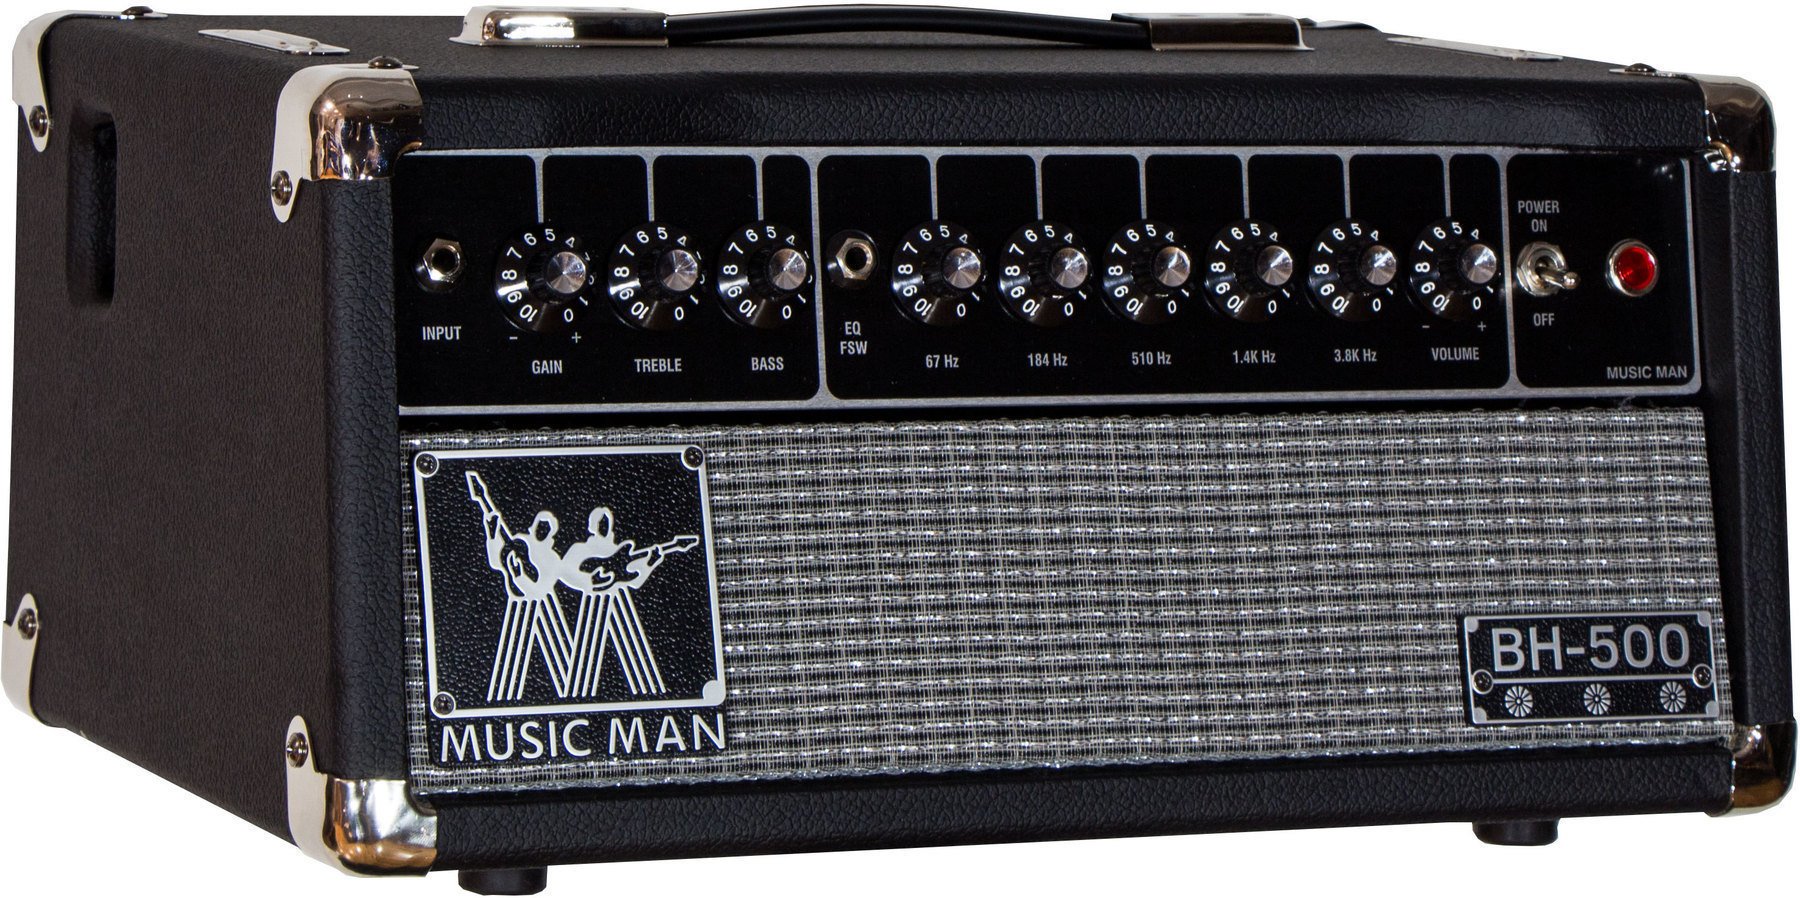 Transistor basversterker Music Man BH 500